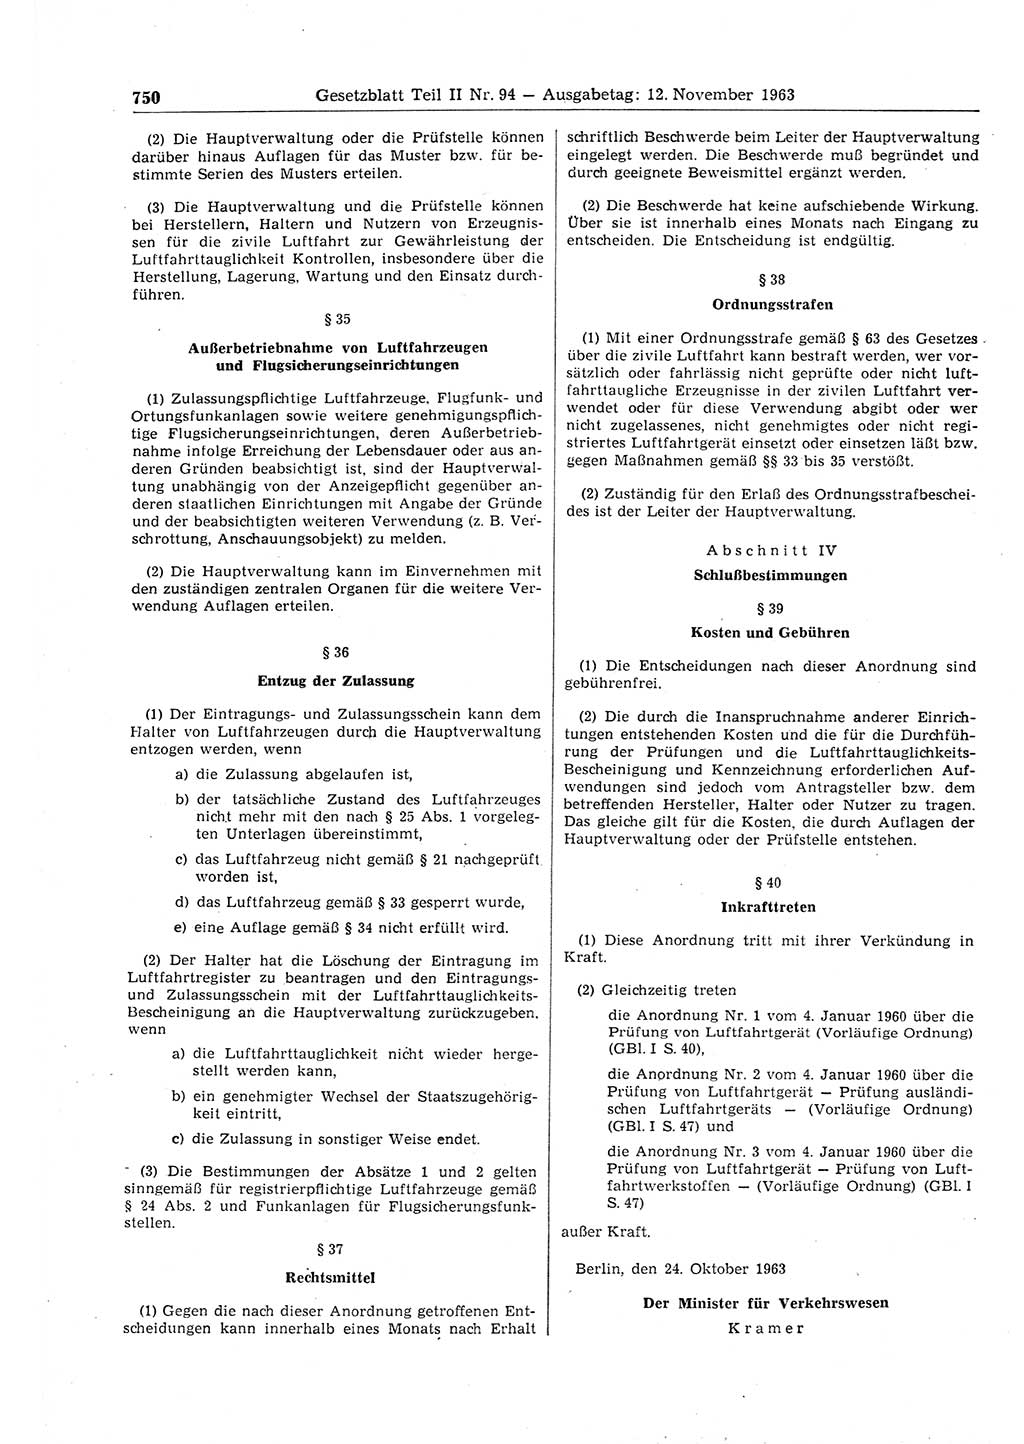 Gesetzblatt (GBl.) der Deutschen Demokratischen Republik (DDR) Teil ⅠⅠ 1963, Seite 750 (GBl. DDR ⅠⅠ 1963, S. 750)